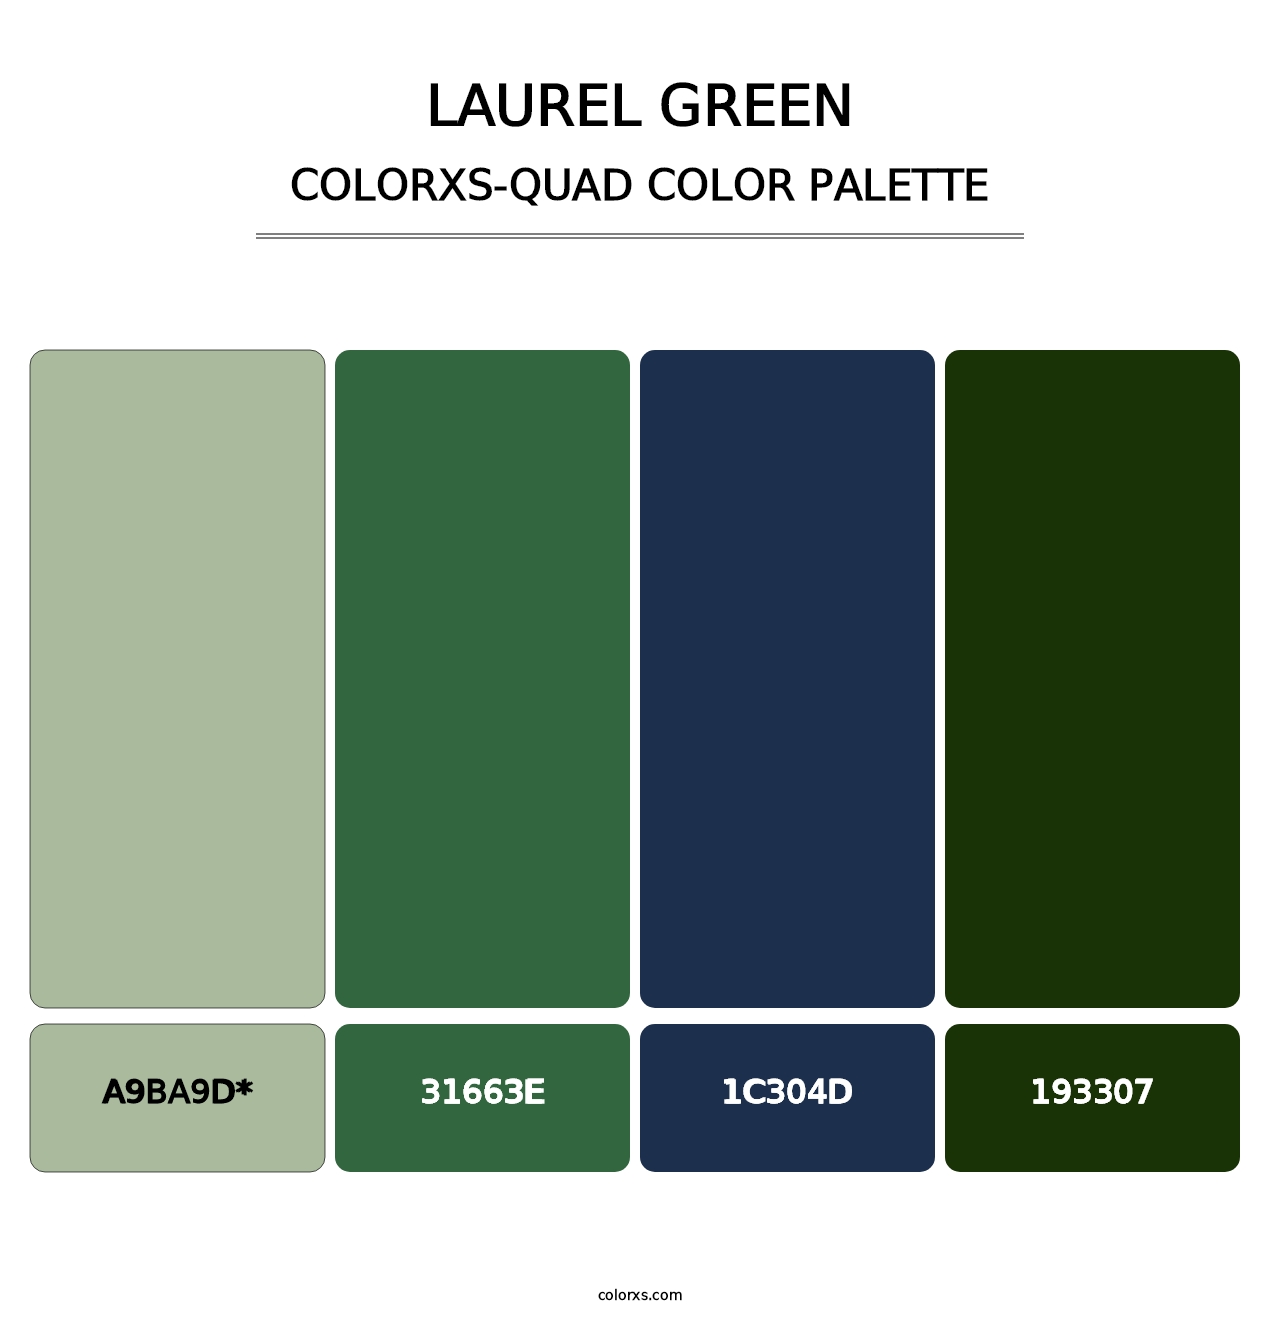 Laurel Green - Colorxs Quad Palette